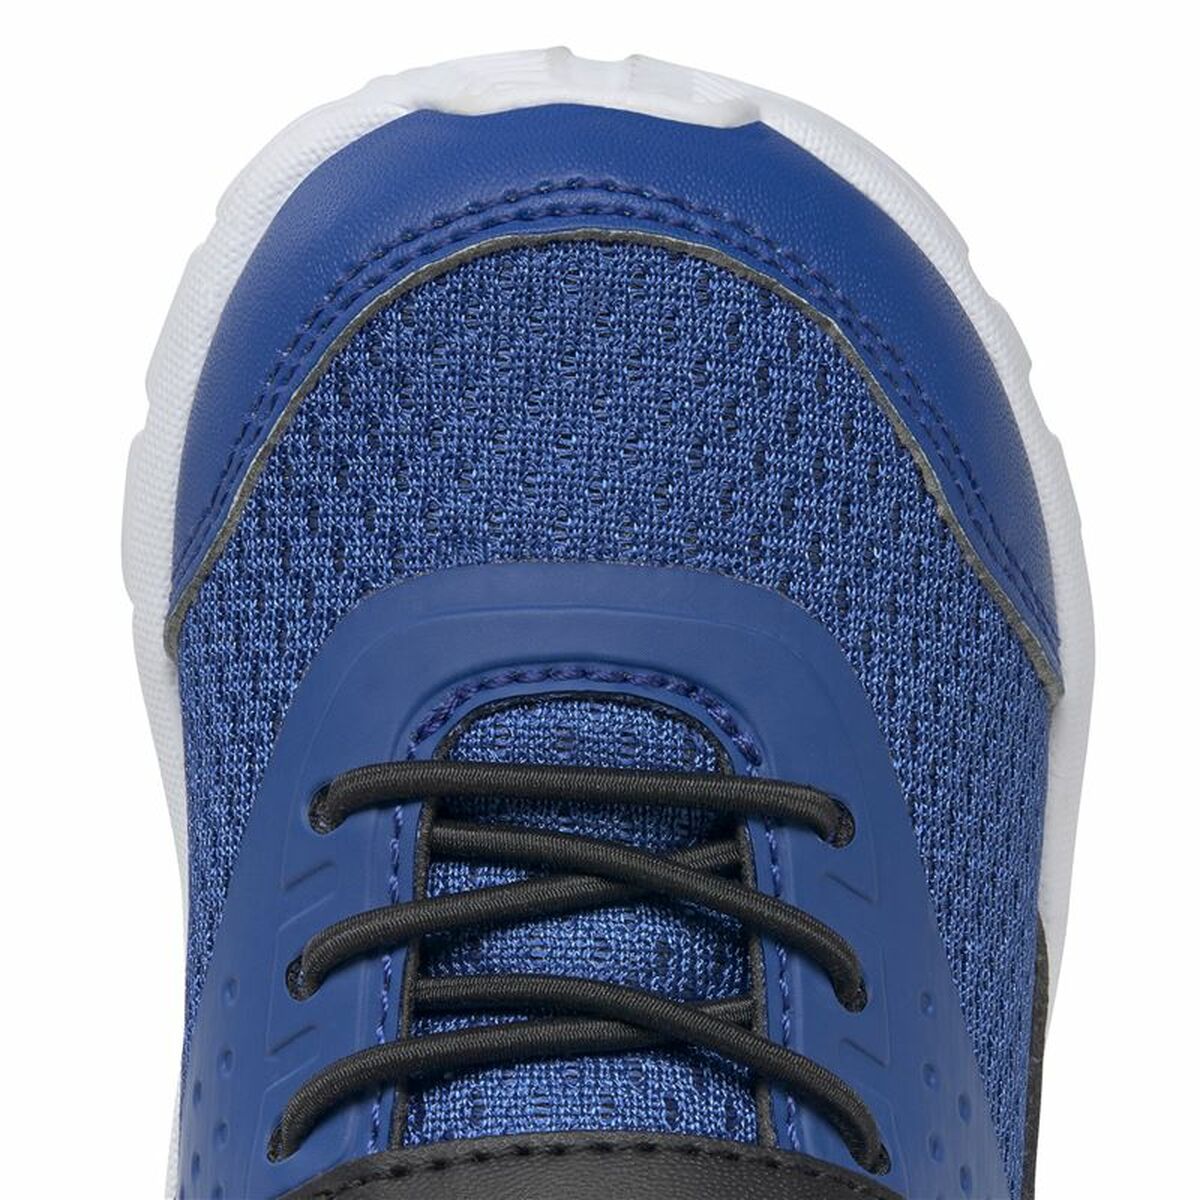 Sports Shoes for Kids Reebok Rush Runner 4 Boys Vector Blue